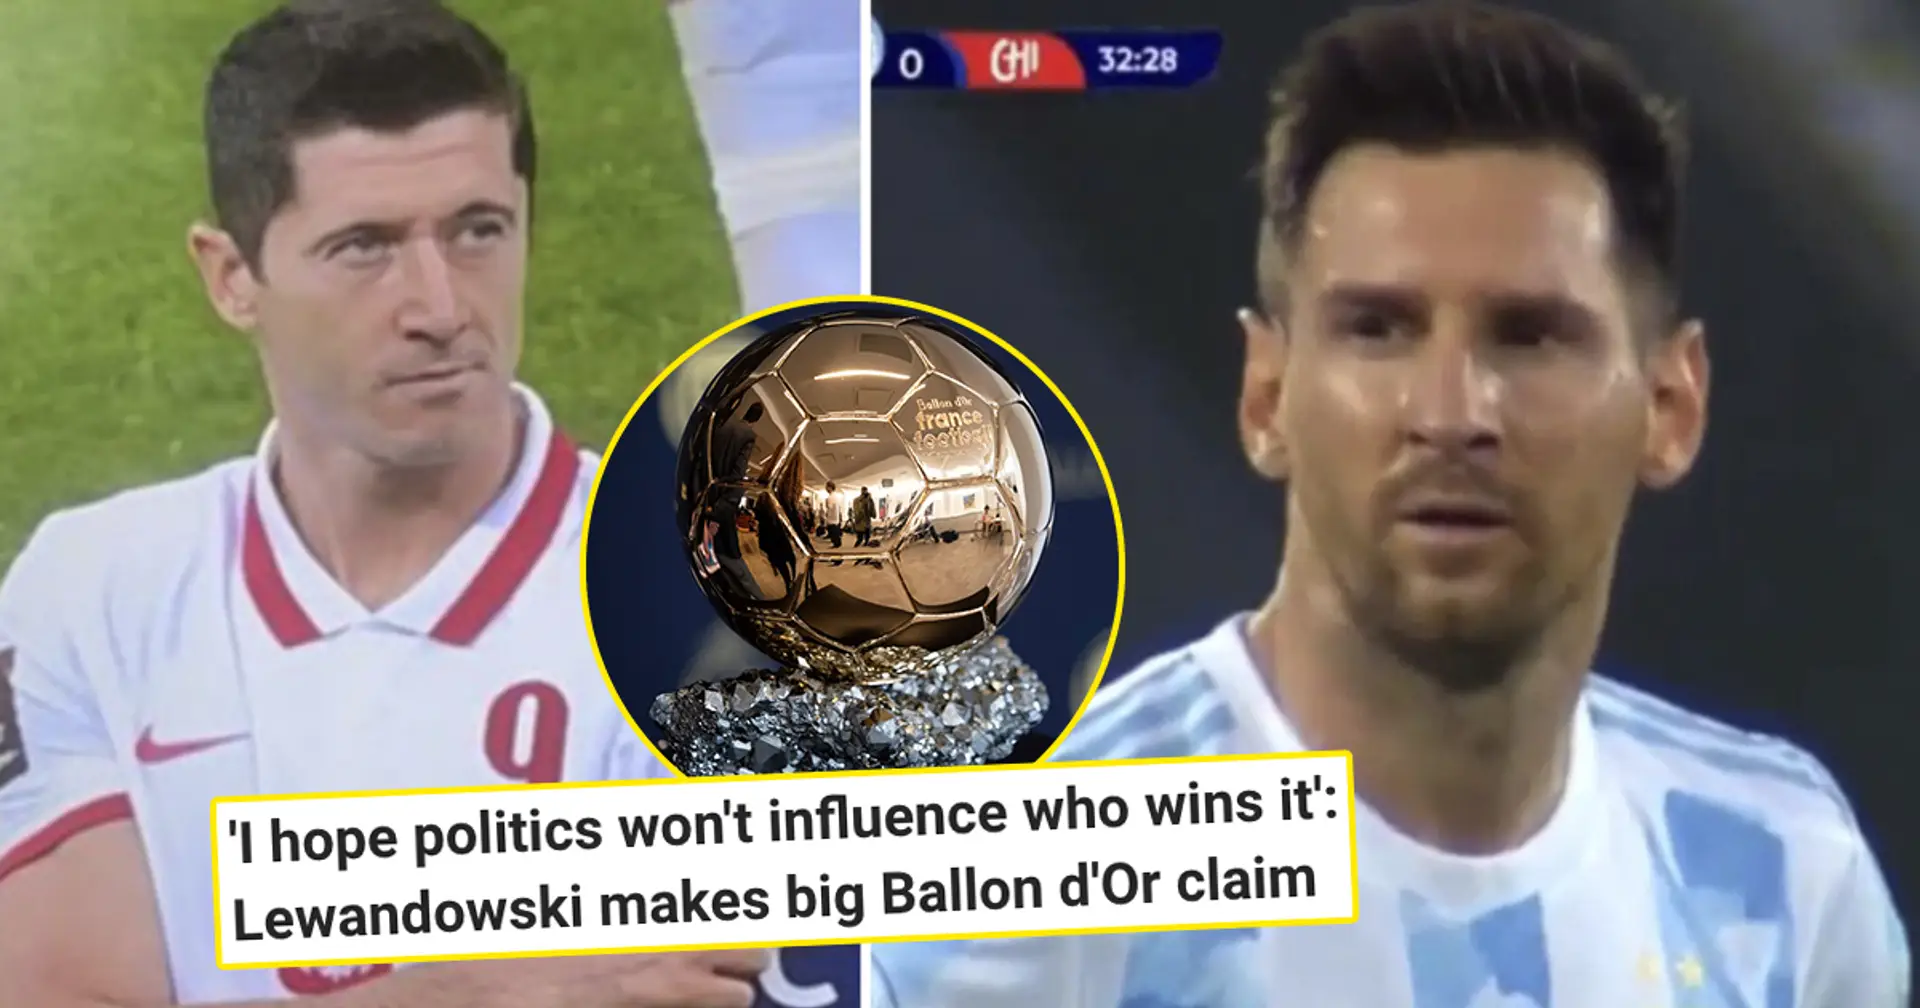 "Contrairement à Lewandowski, il était très respectueux": Un fan du Barca nomme une référence parmi les concurrents du Ballon d'Or de Messi